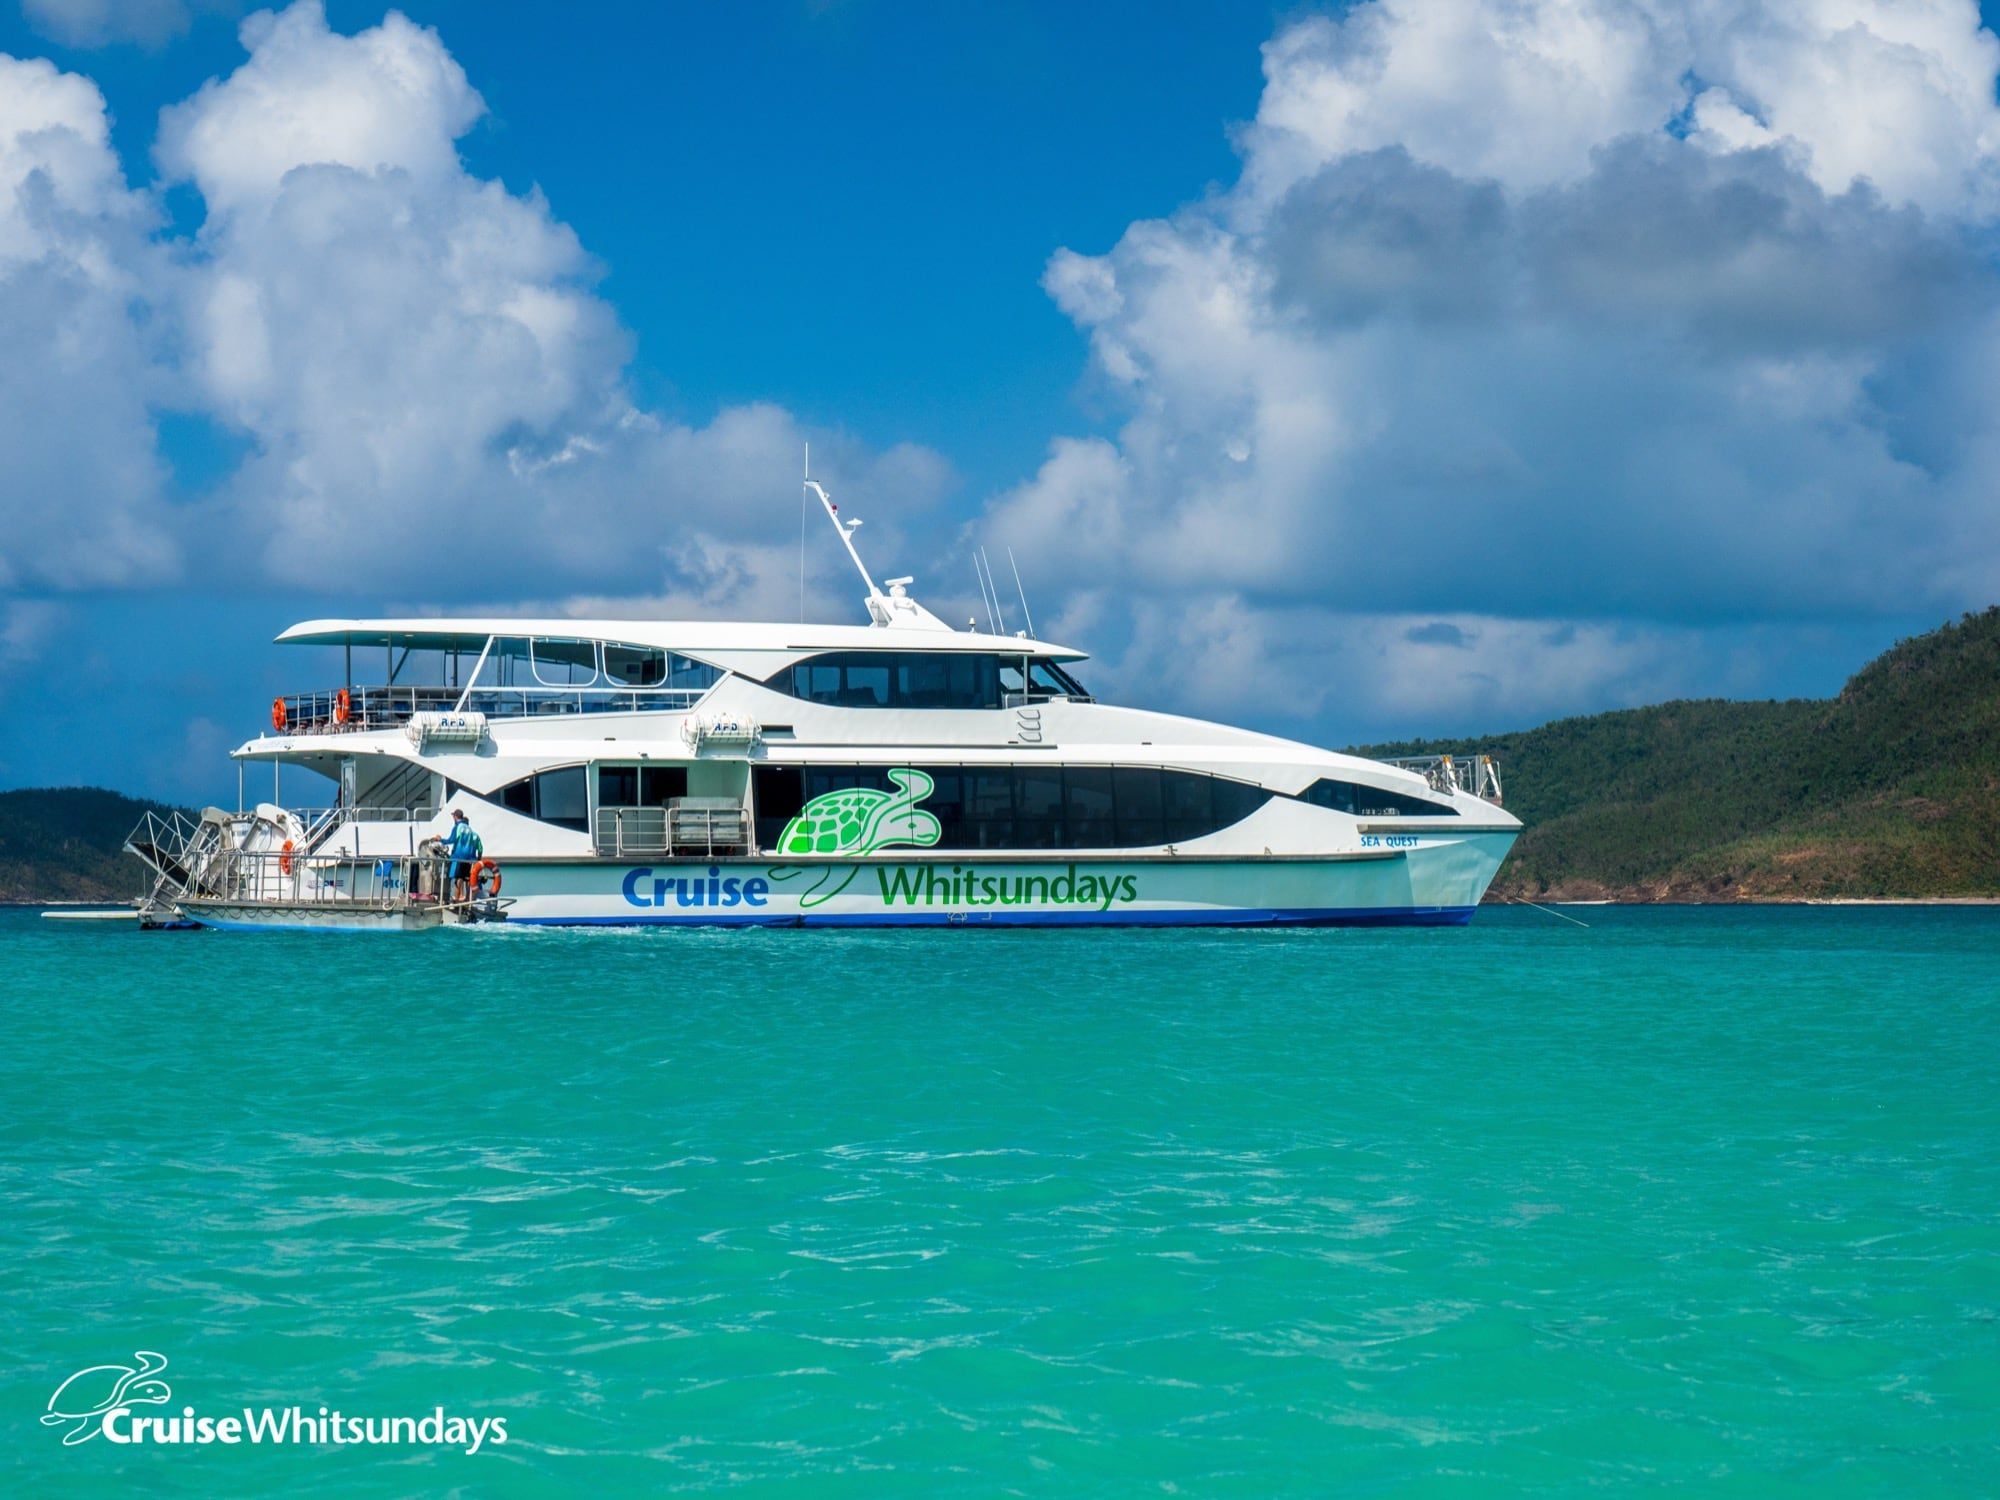 cruise whitsundays hamilton island timetable